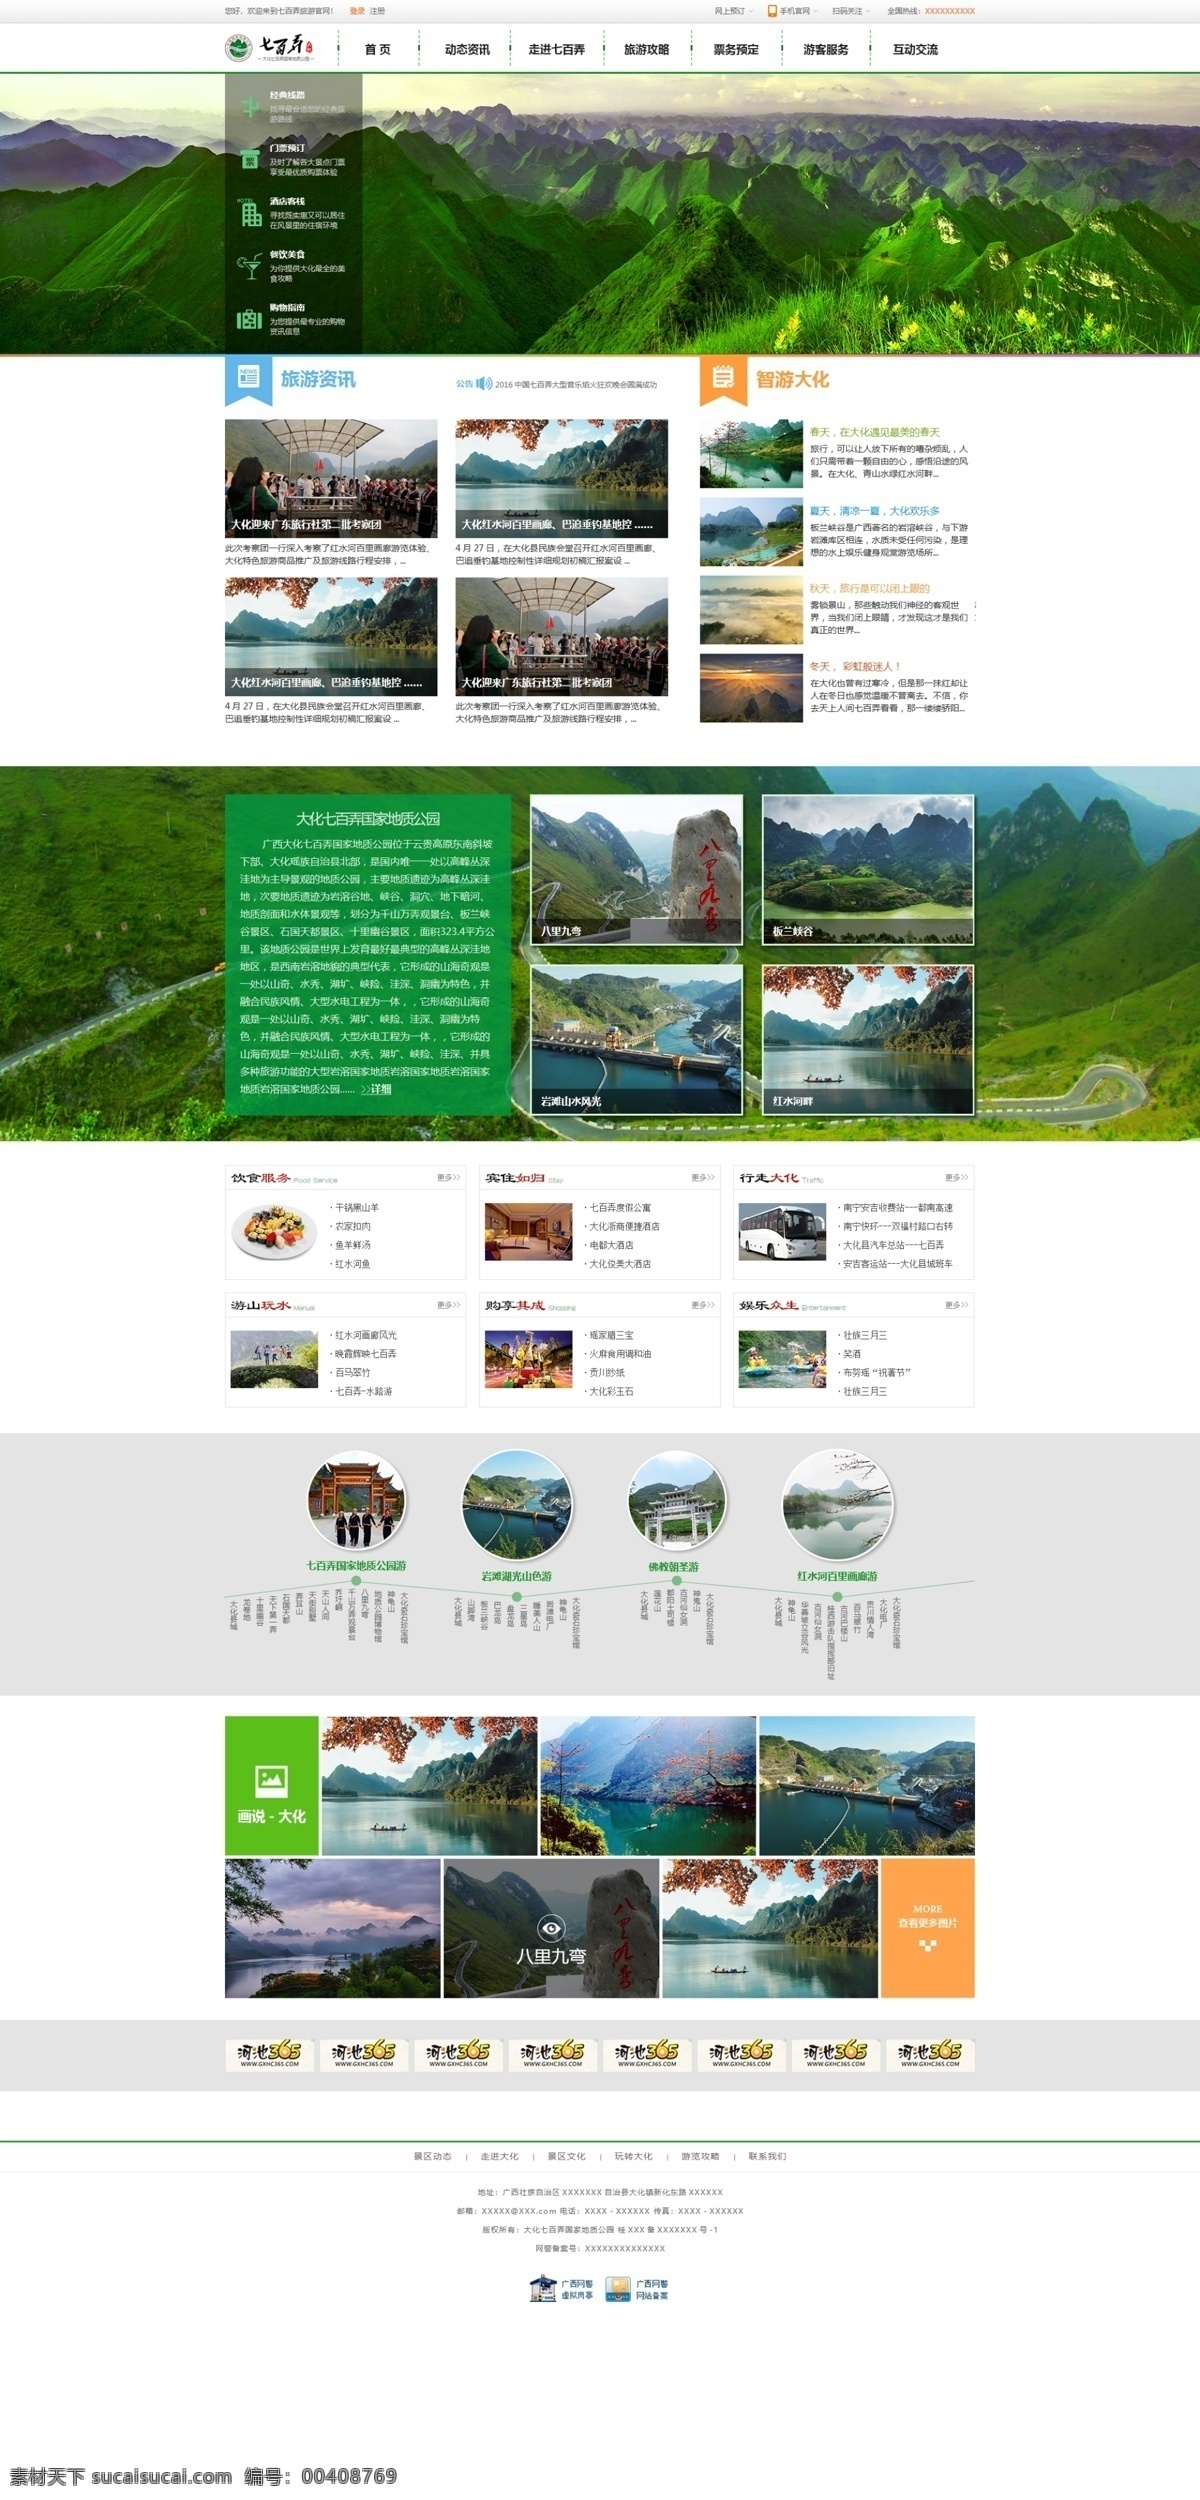 旅游网站设计 旅游网站模板 旅游网站 网站 网站模板 网站设计 网页设计模板 ui web 界面设计 中文模板